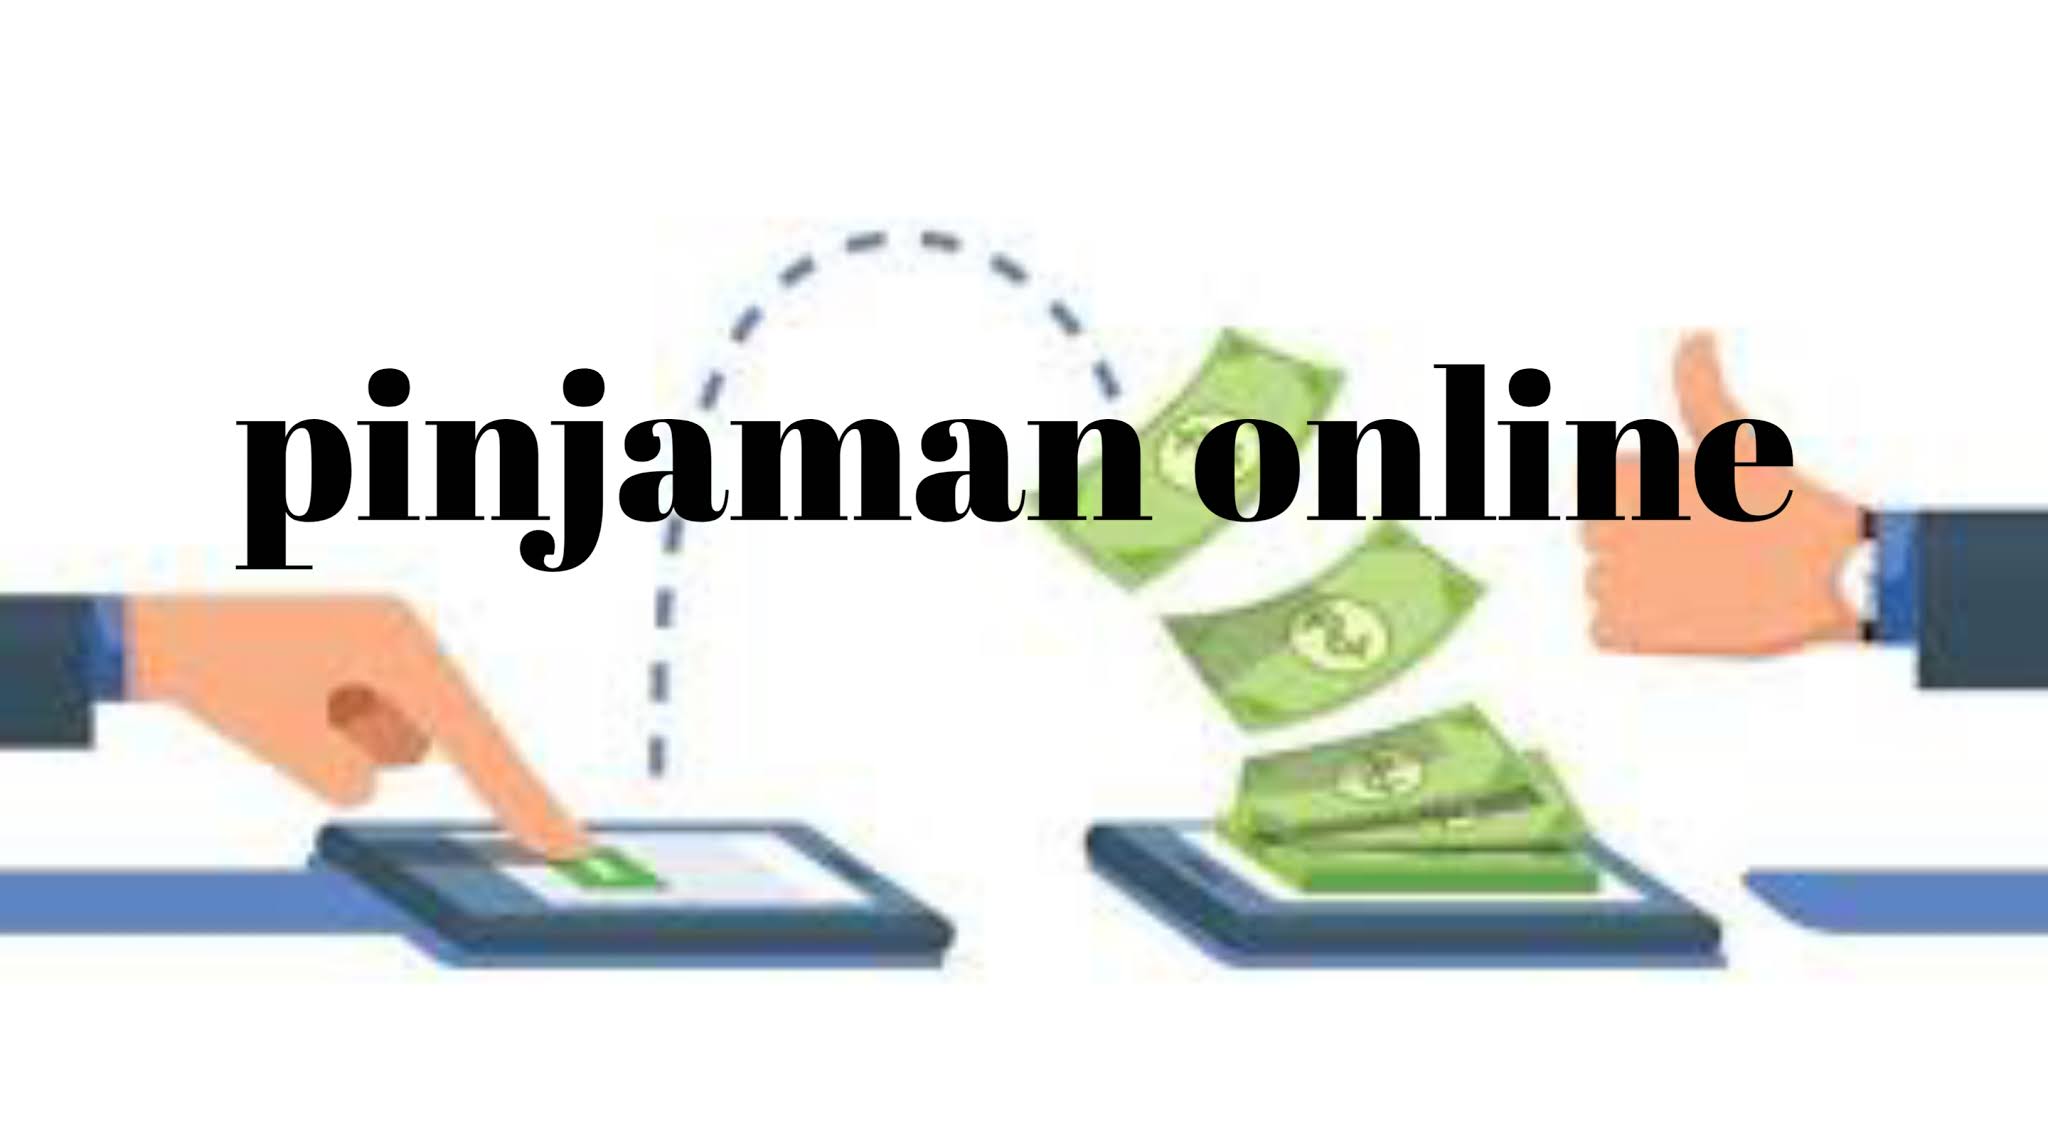 5 Pinjaman Online Tanpa Slip Gaji Cepat Terpercaya 2020 ...